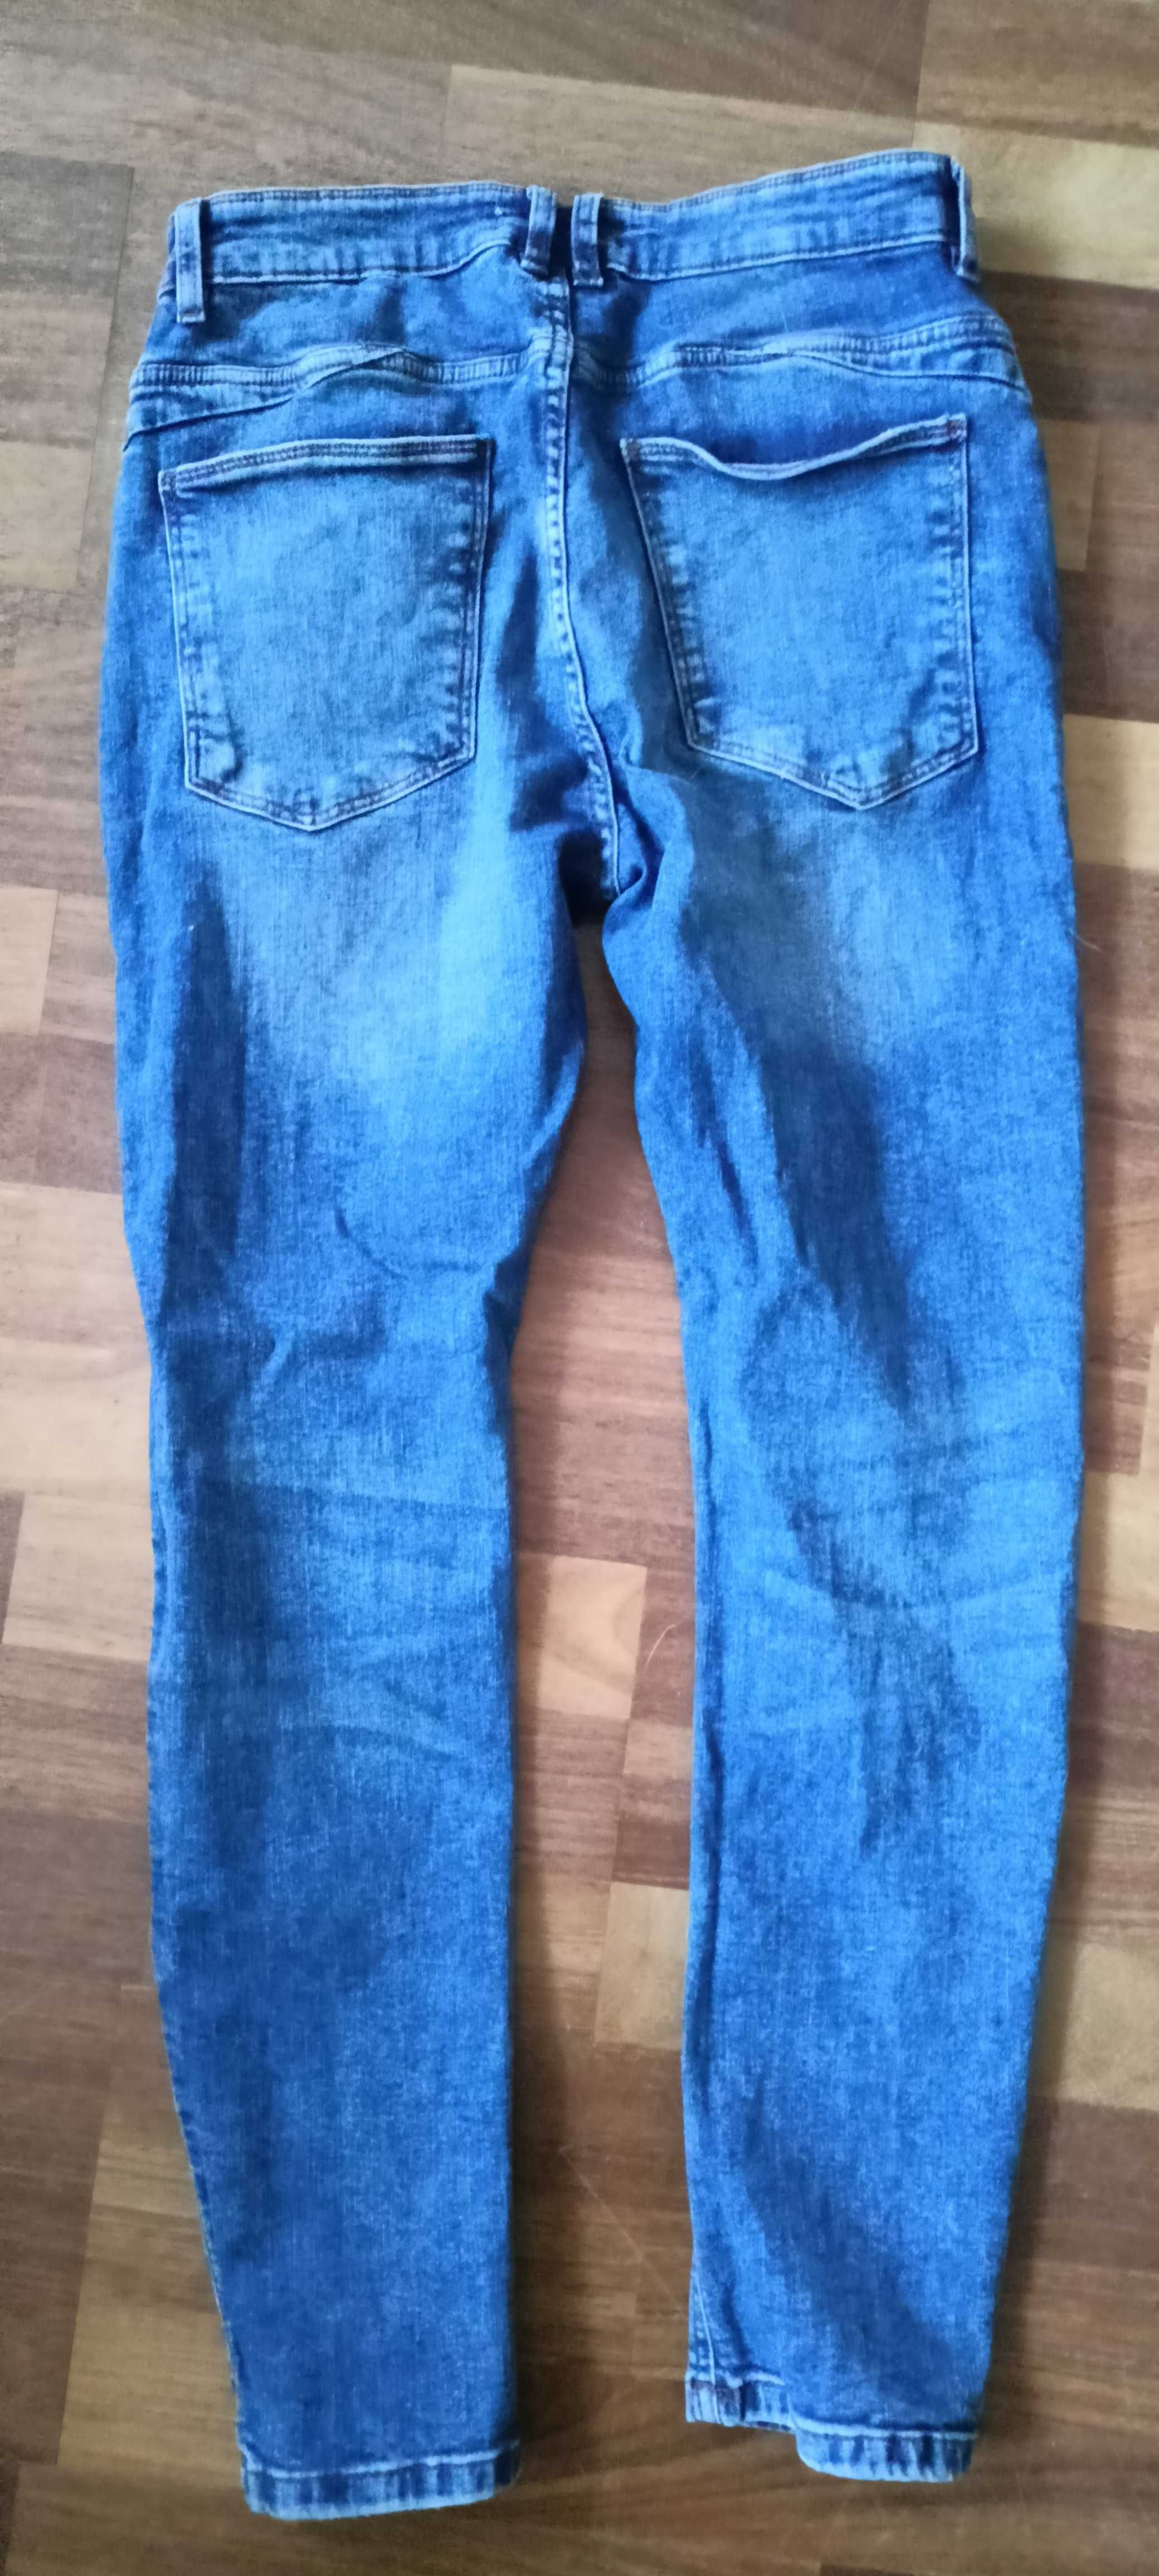 Spodnie jeansowe Jeansy skiny House denim W30L30